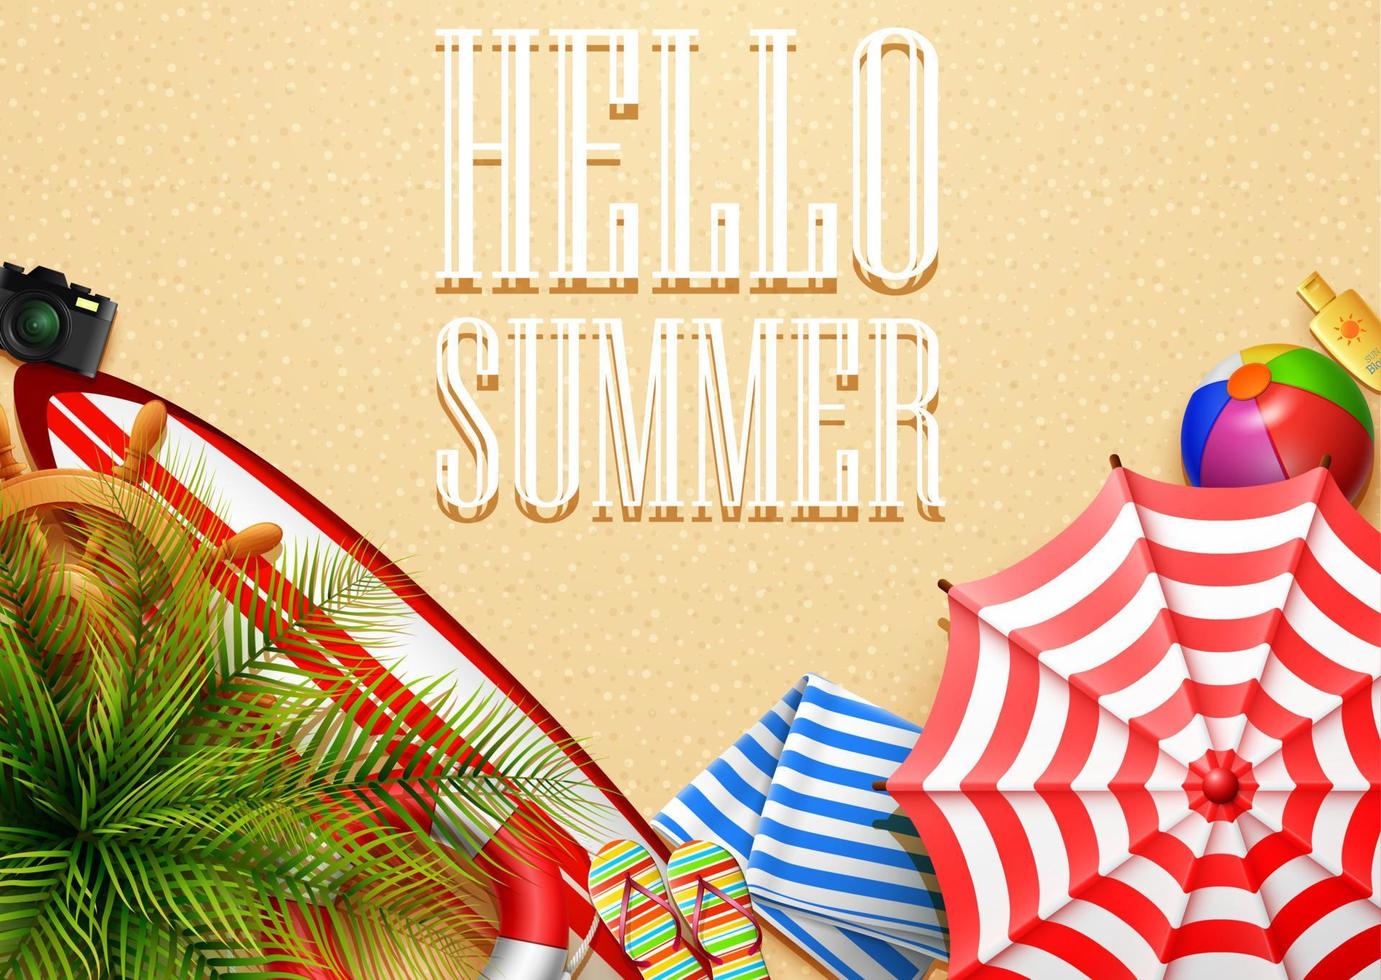 Olá banner de férias de verão. vista superior de folhas tropicais e coleções de elementos de praia em fundo de areia vetor